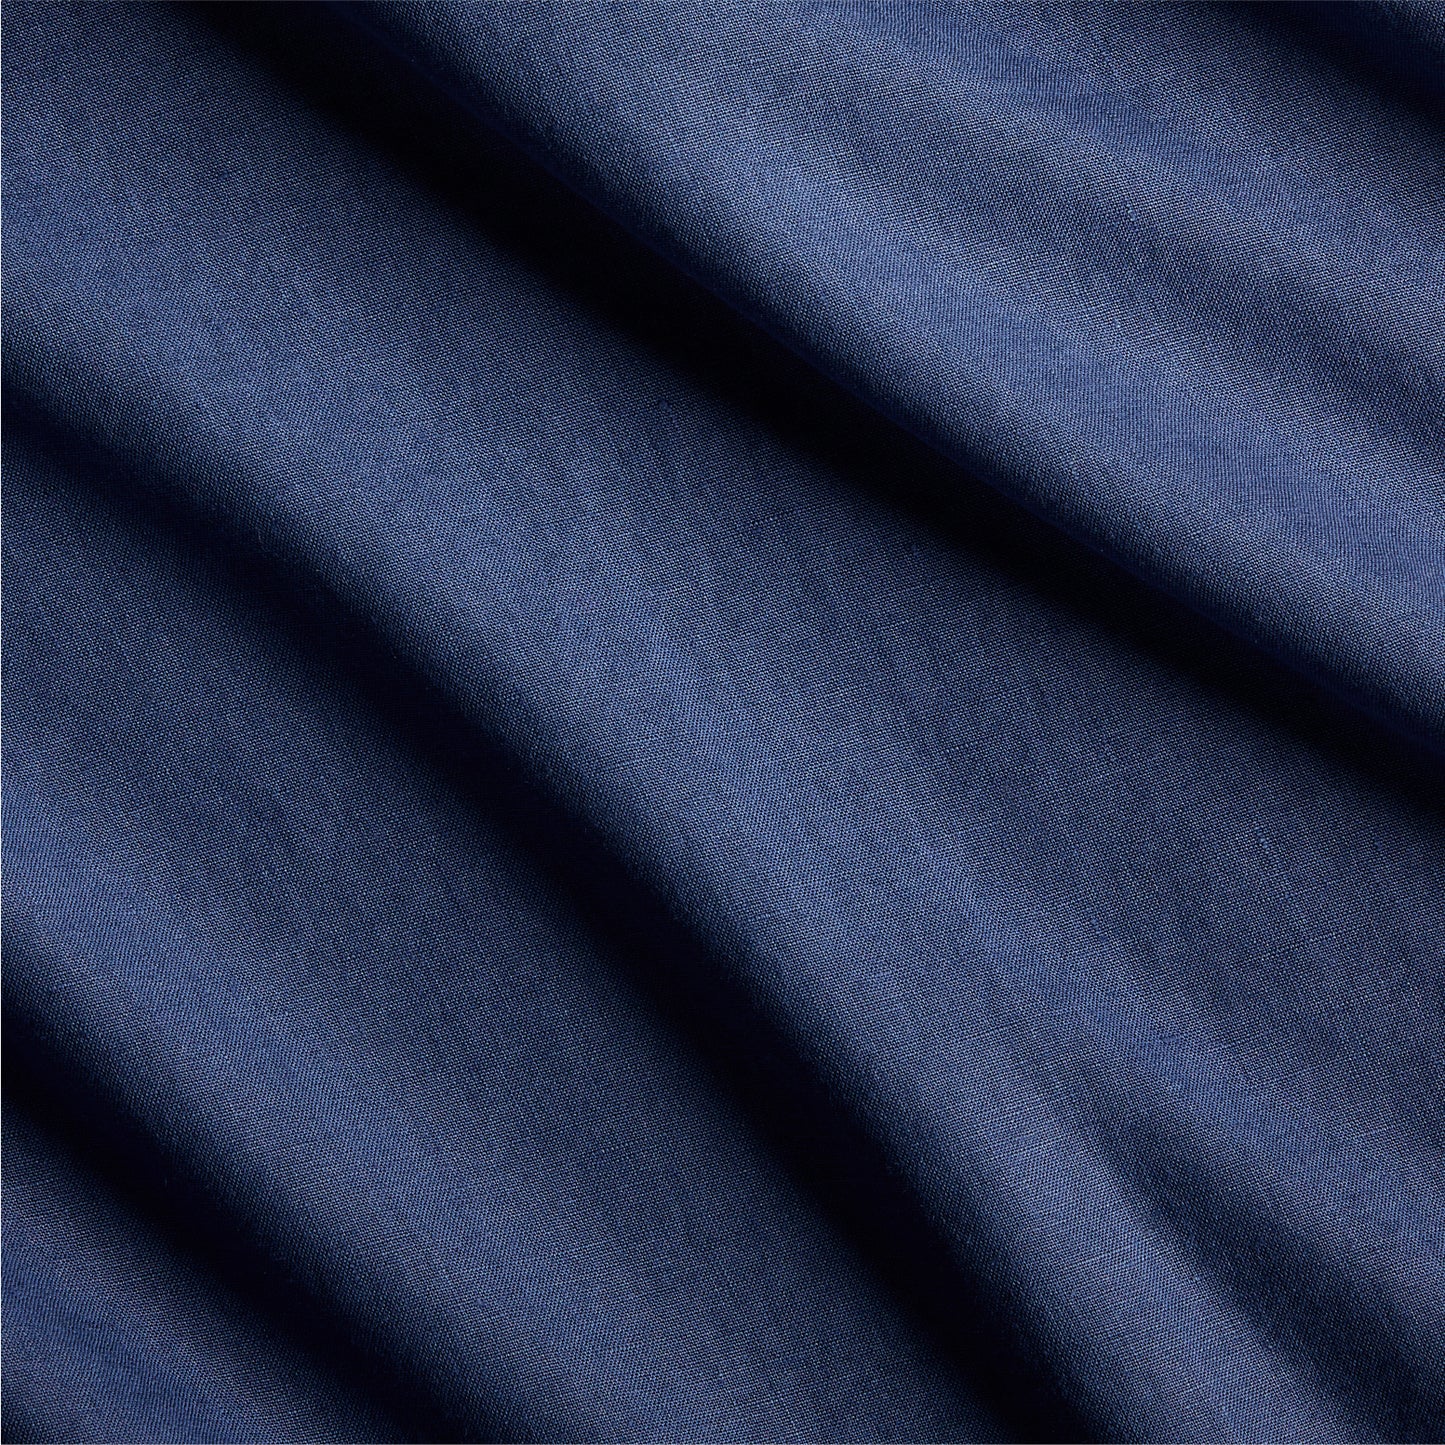 Navy Blue Washed Linen Duvet Cover